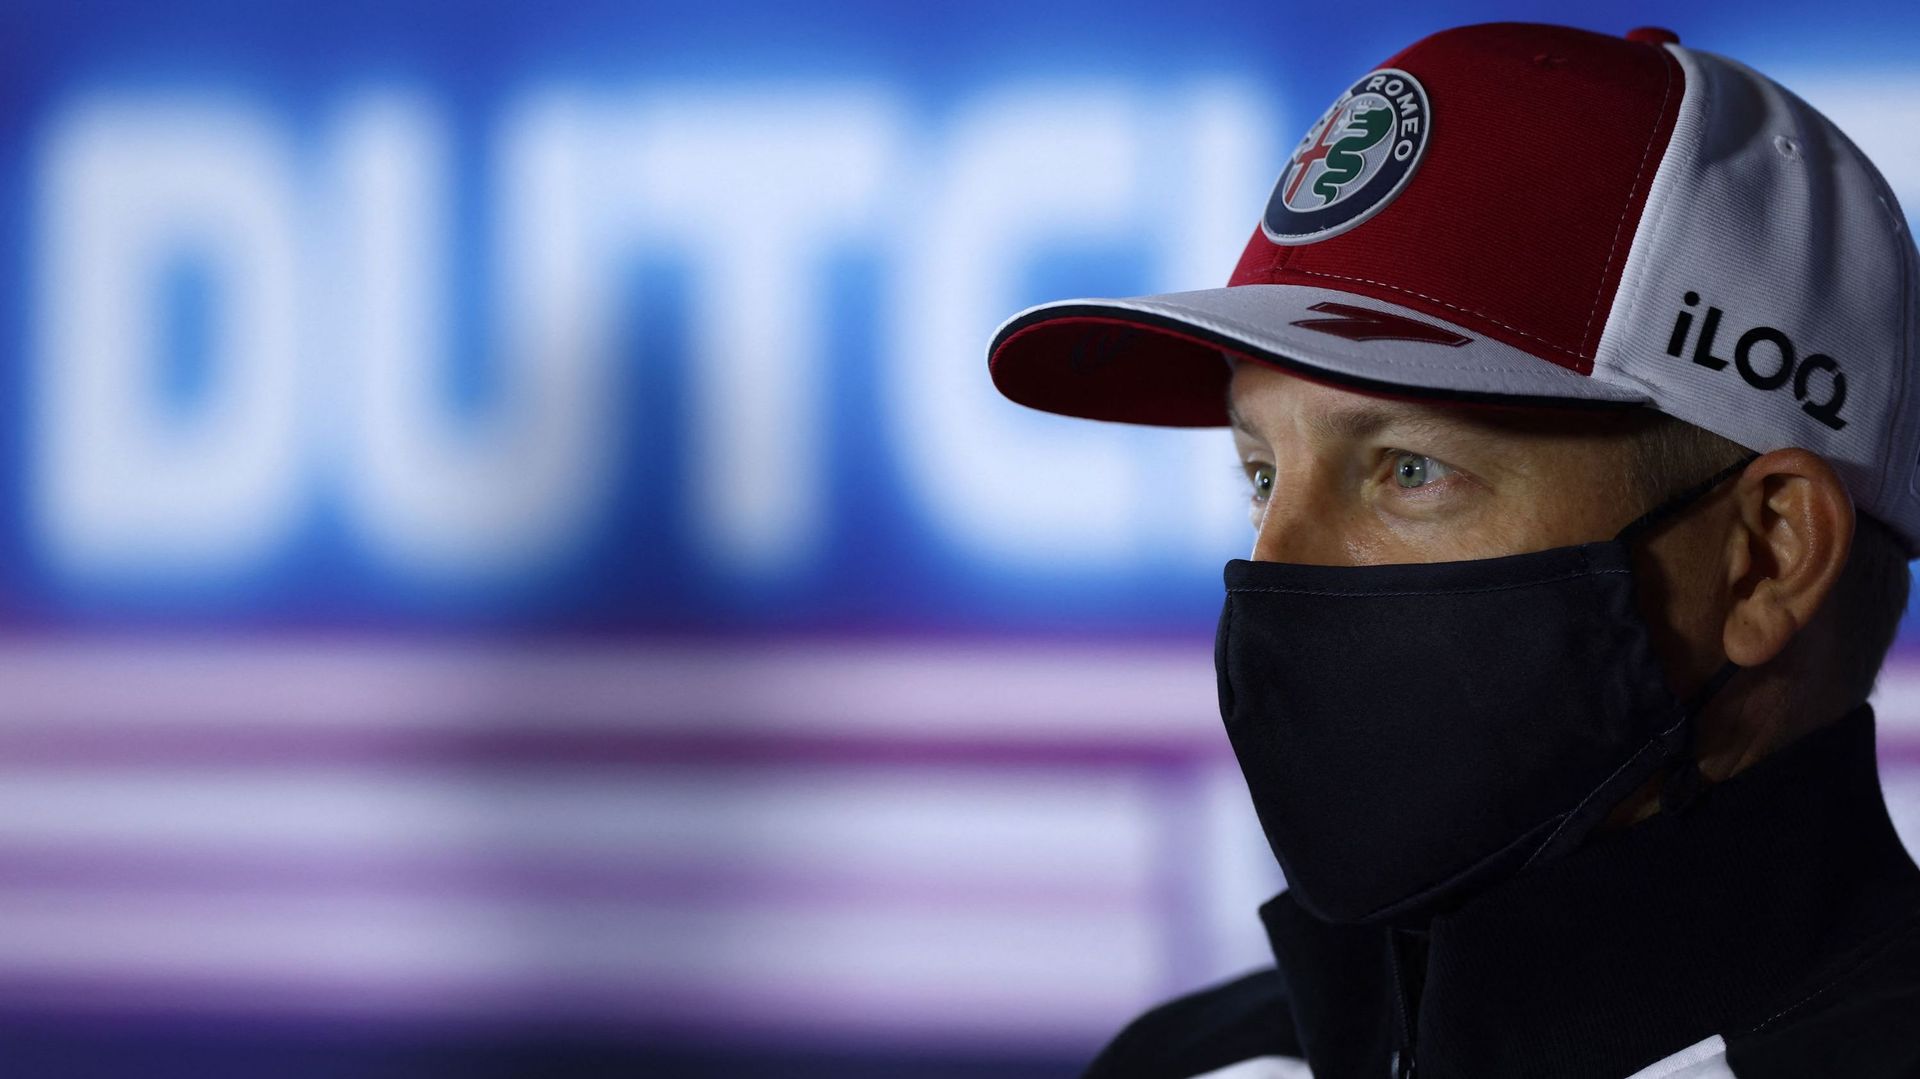 Le Finlandais Kimi Räikkönen doit faire l’impasse sur le Grand Prix des Pays-Bas de Formule 1, dimanche à Zandvoort, en raison d’un test positif au Covid-19, a annoncé samedi matin son équipe, Alfa Romeo.